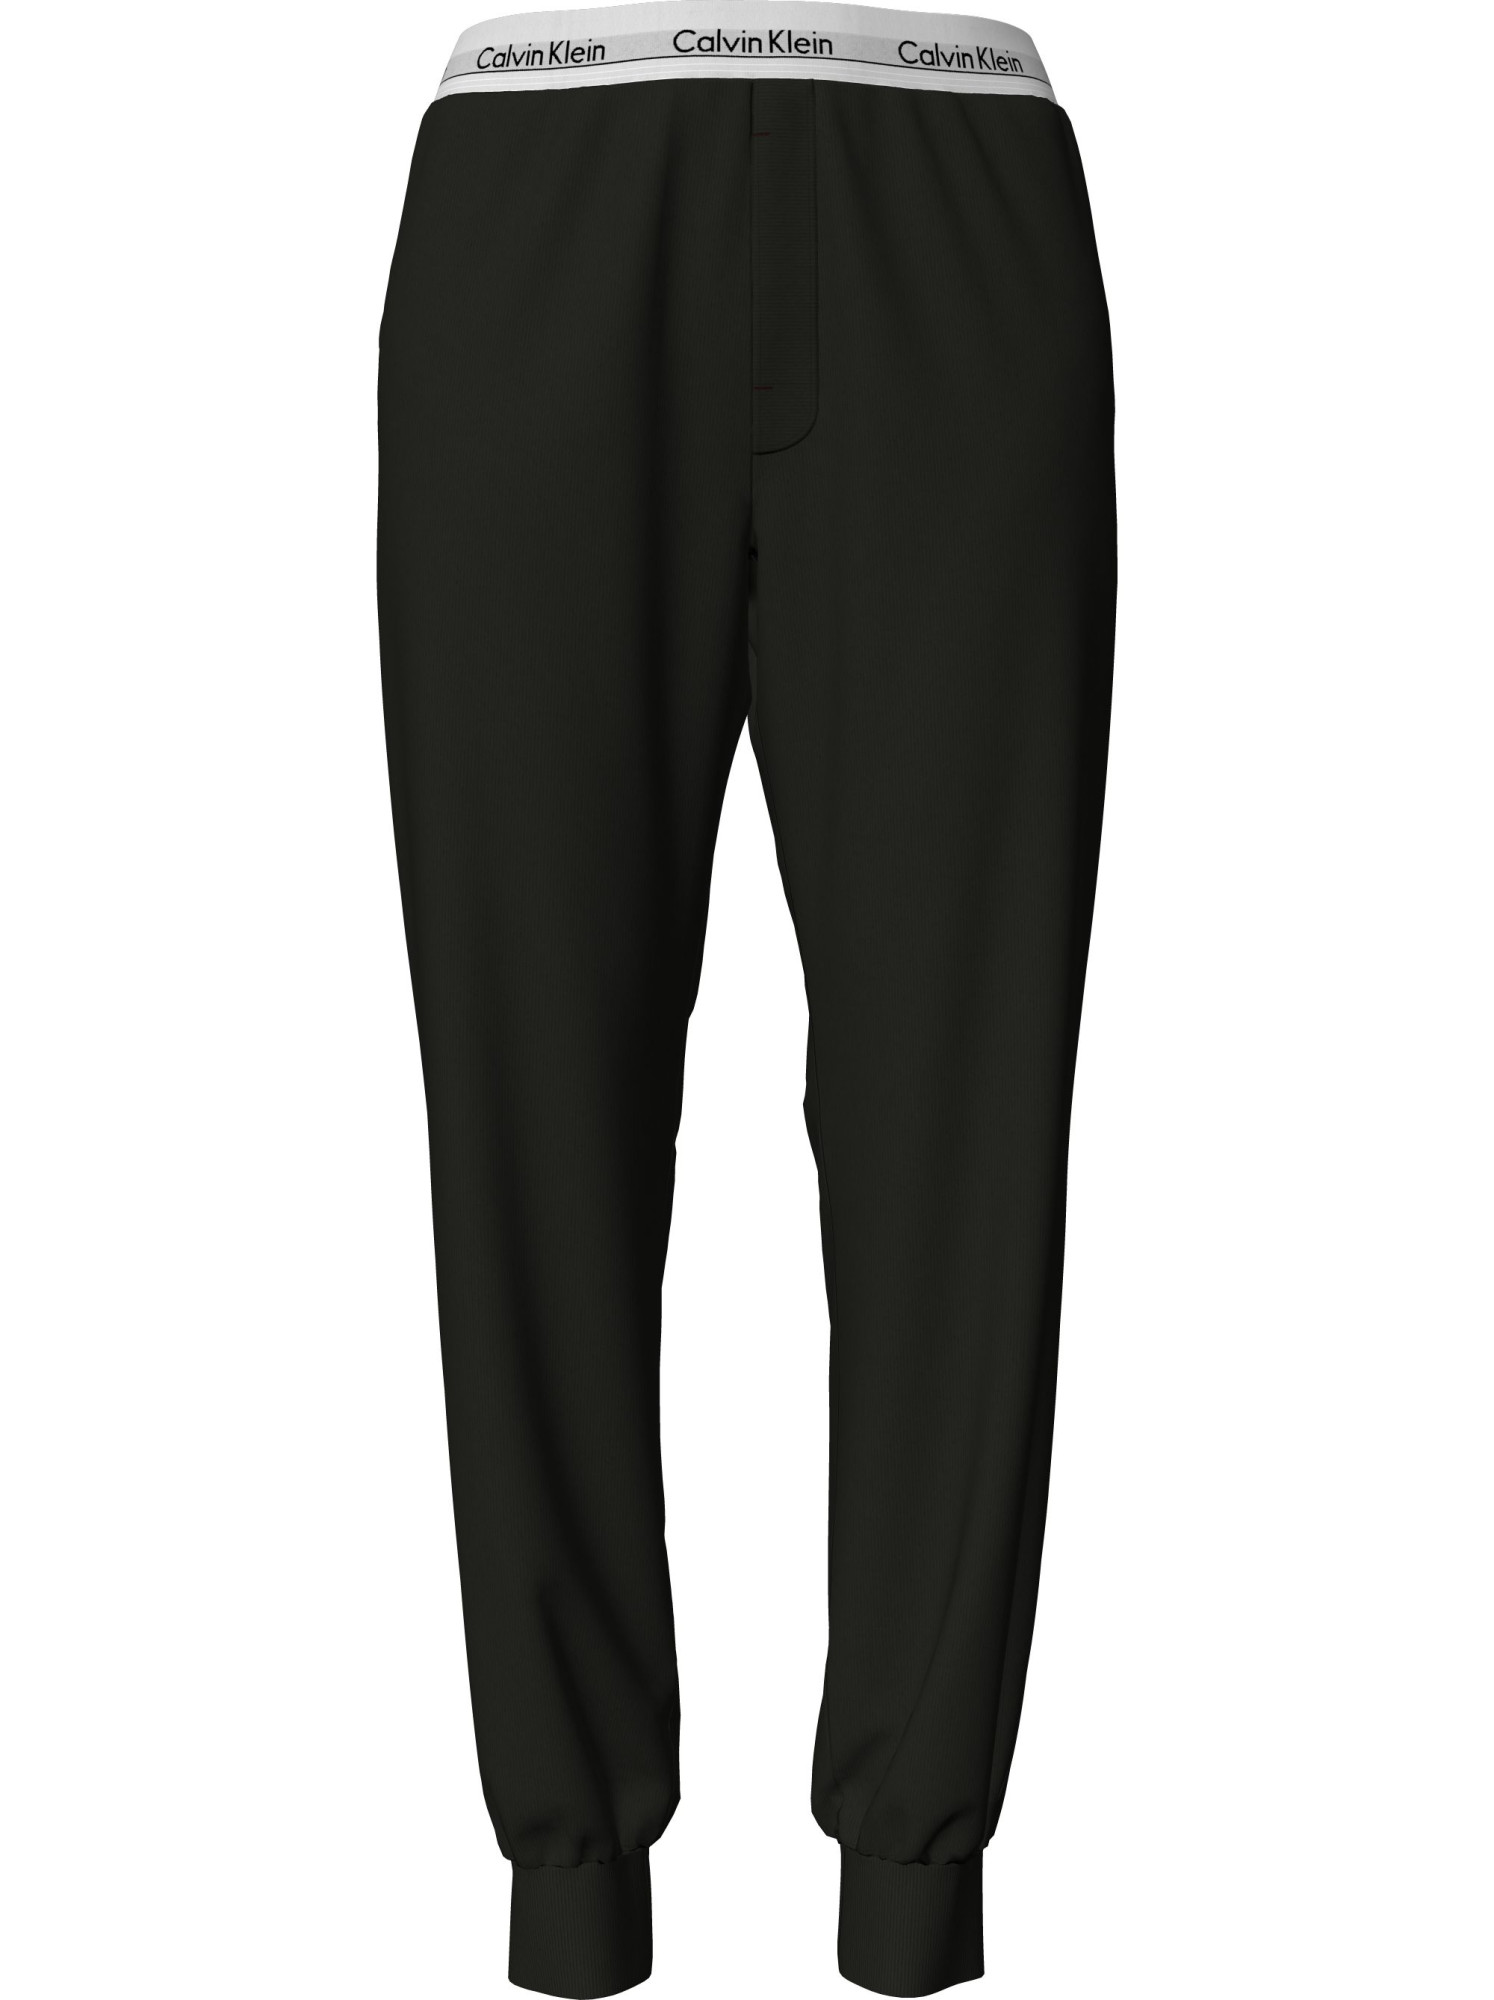 Dámské pyžamové kalhoty Pyjama Pants Modern Cotton 000QS6872EUB1 černá - Calvin Klein XS